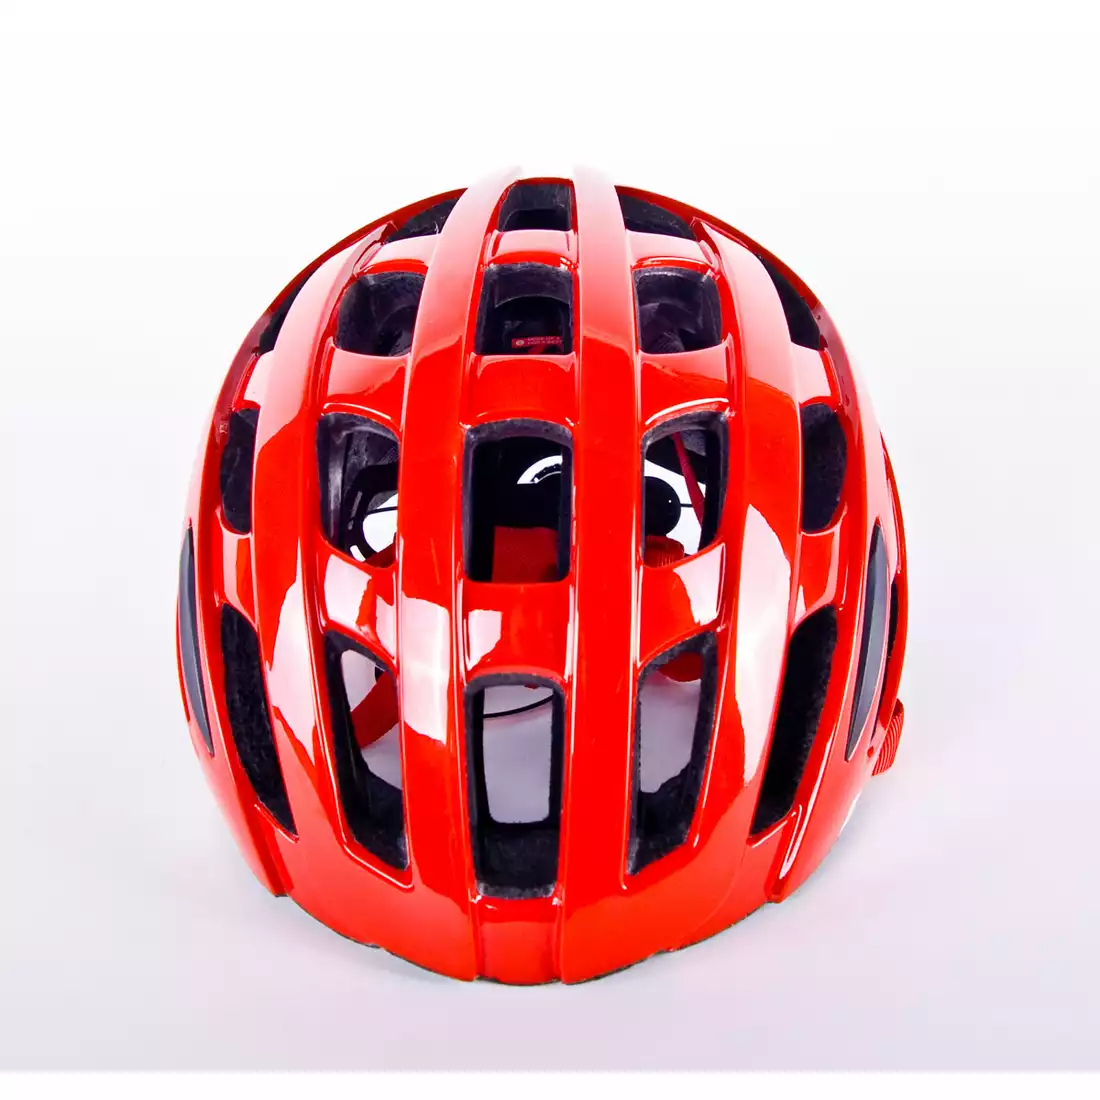 LAZER TONIC szosowy kask rowerowy TS+ czerwony połysk